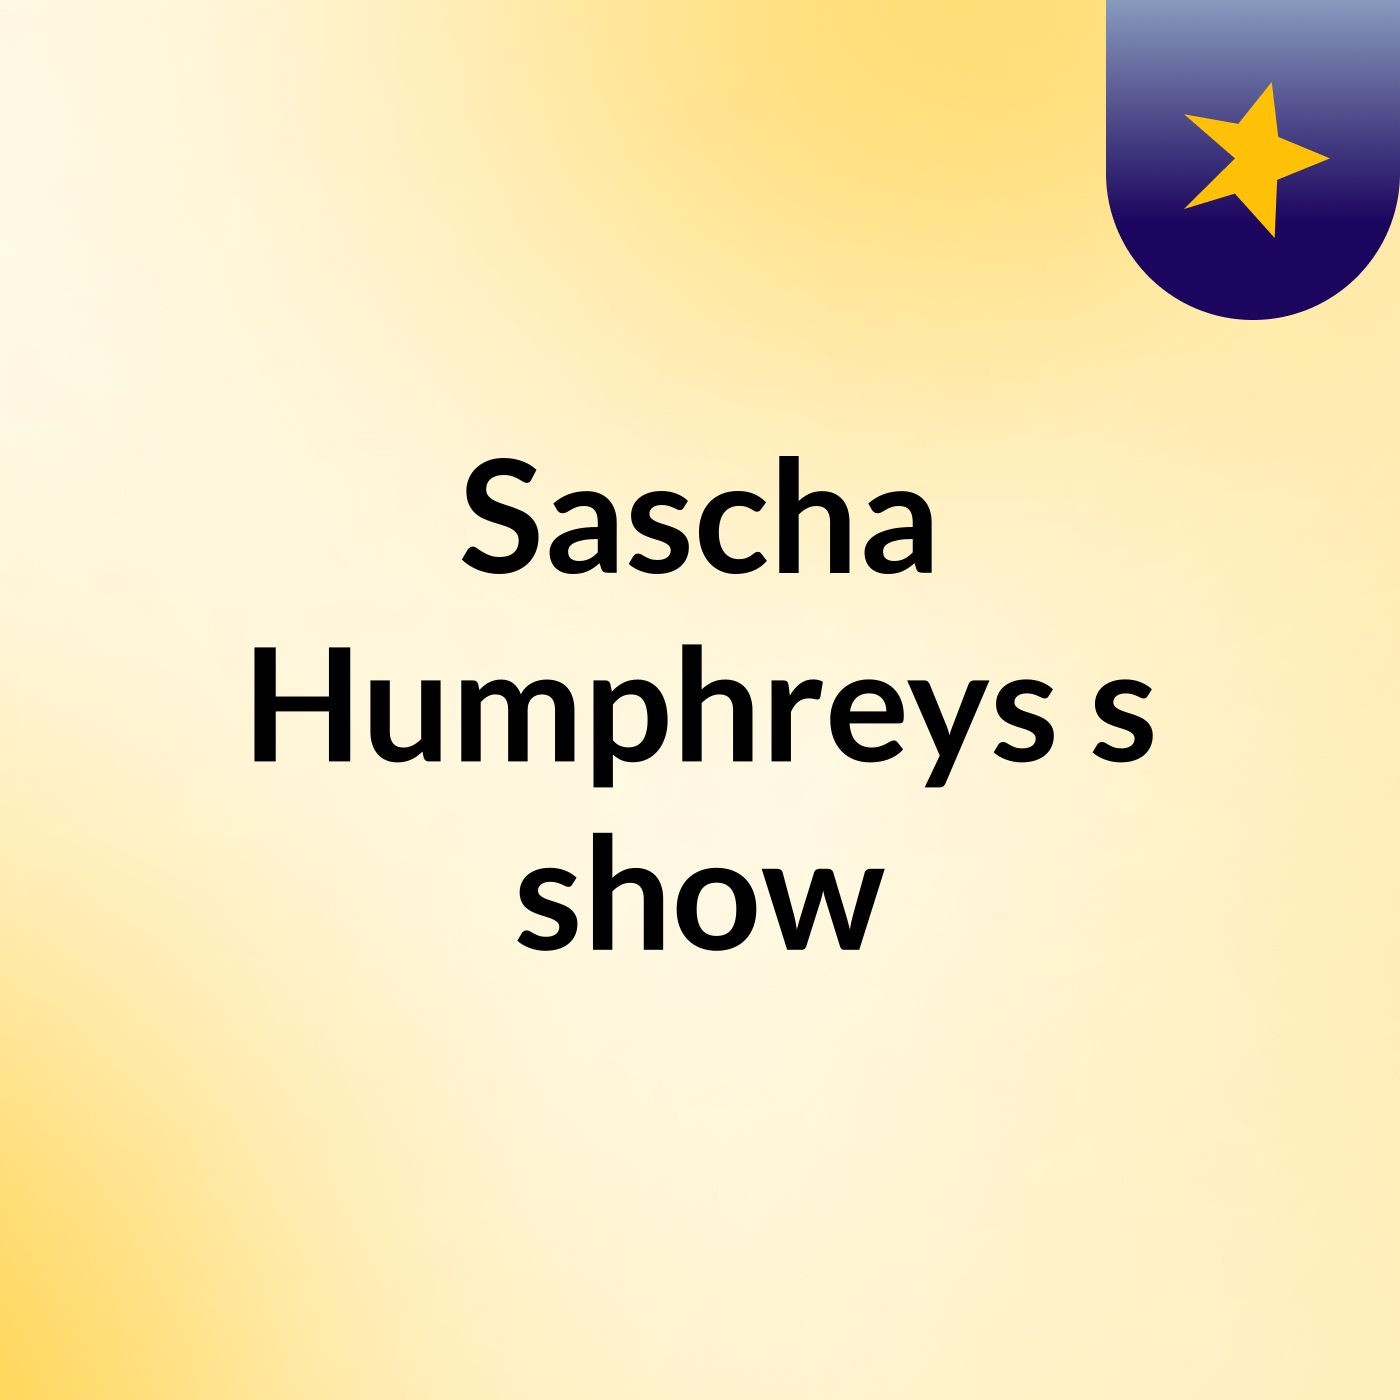 Sascha Humphreys's show